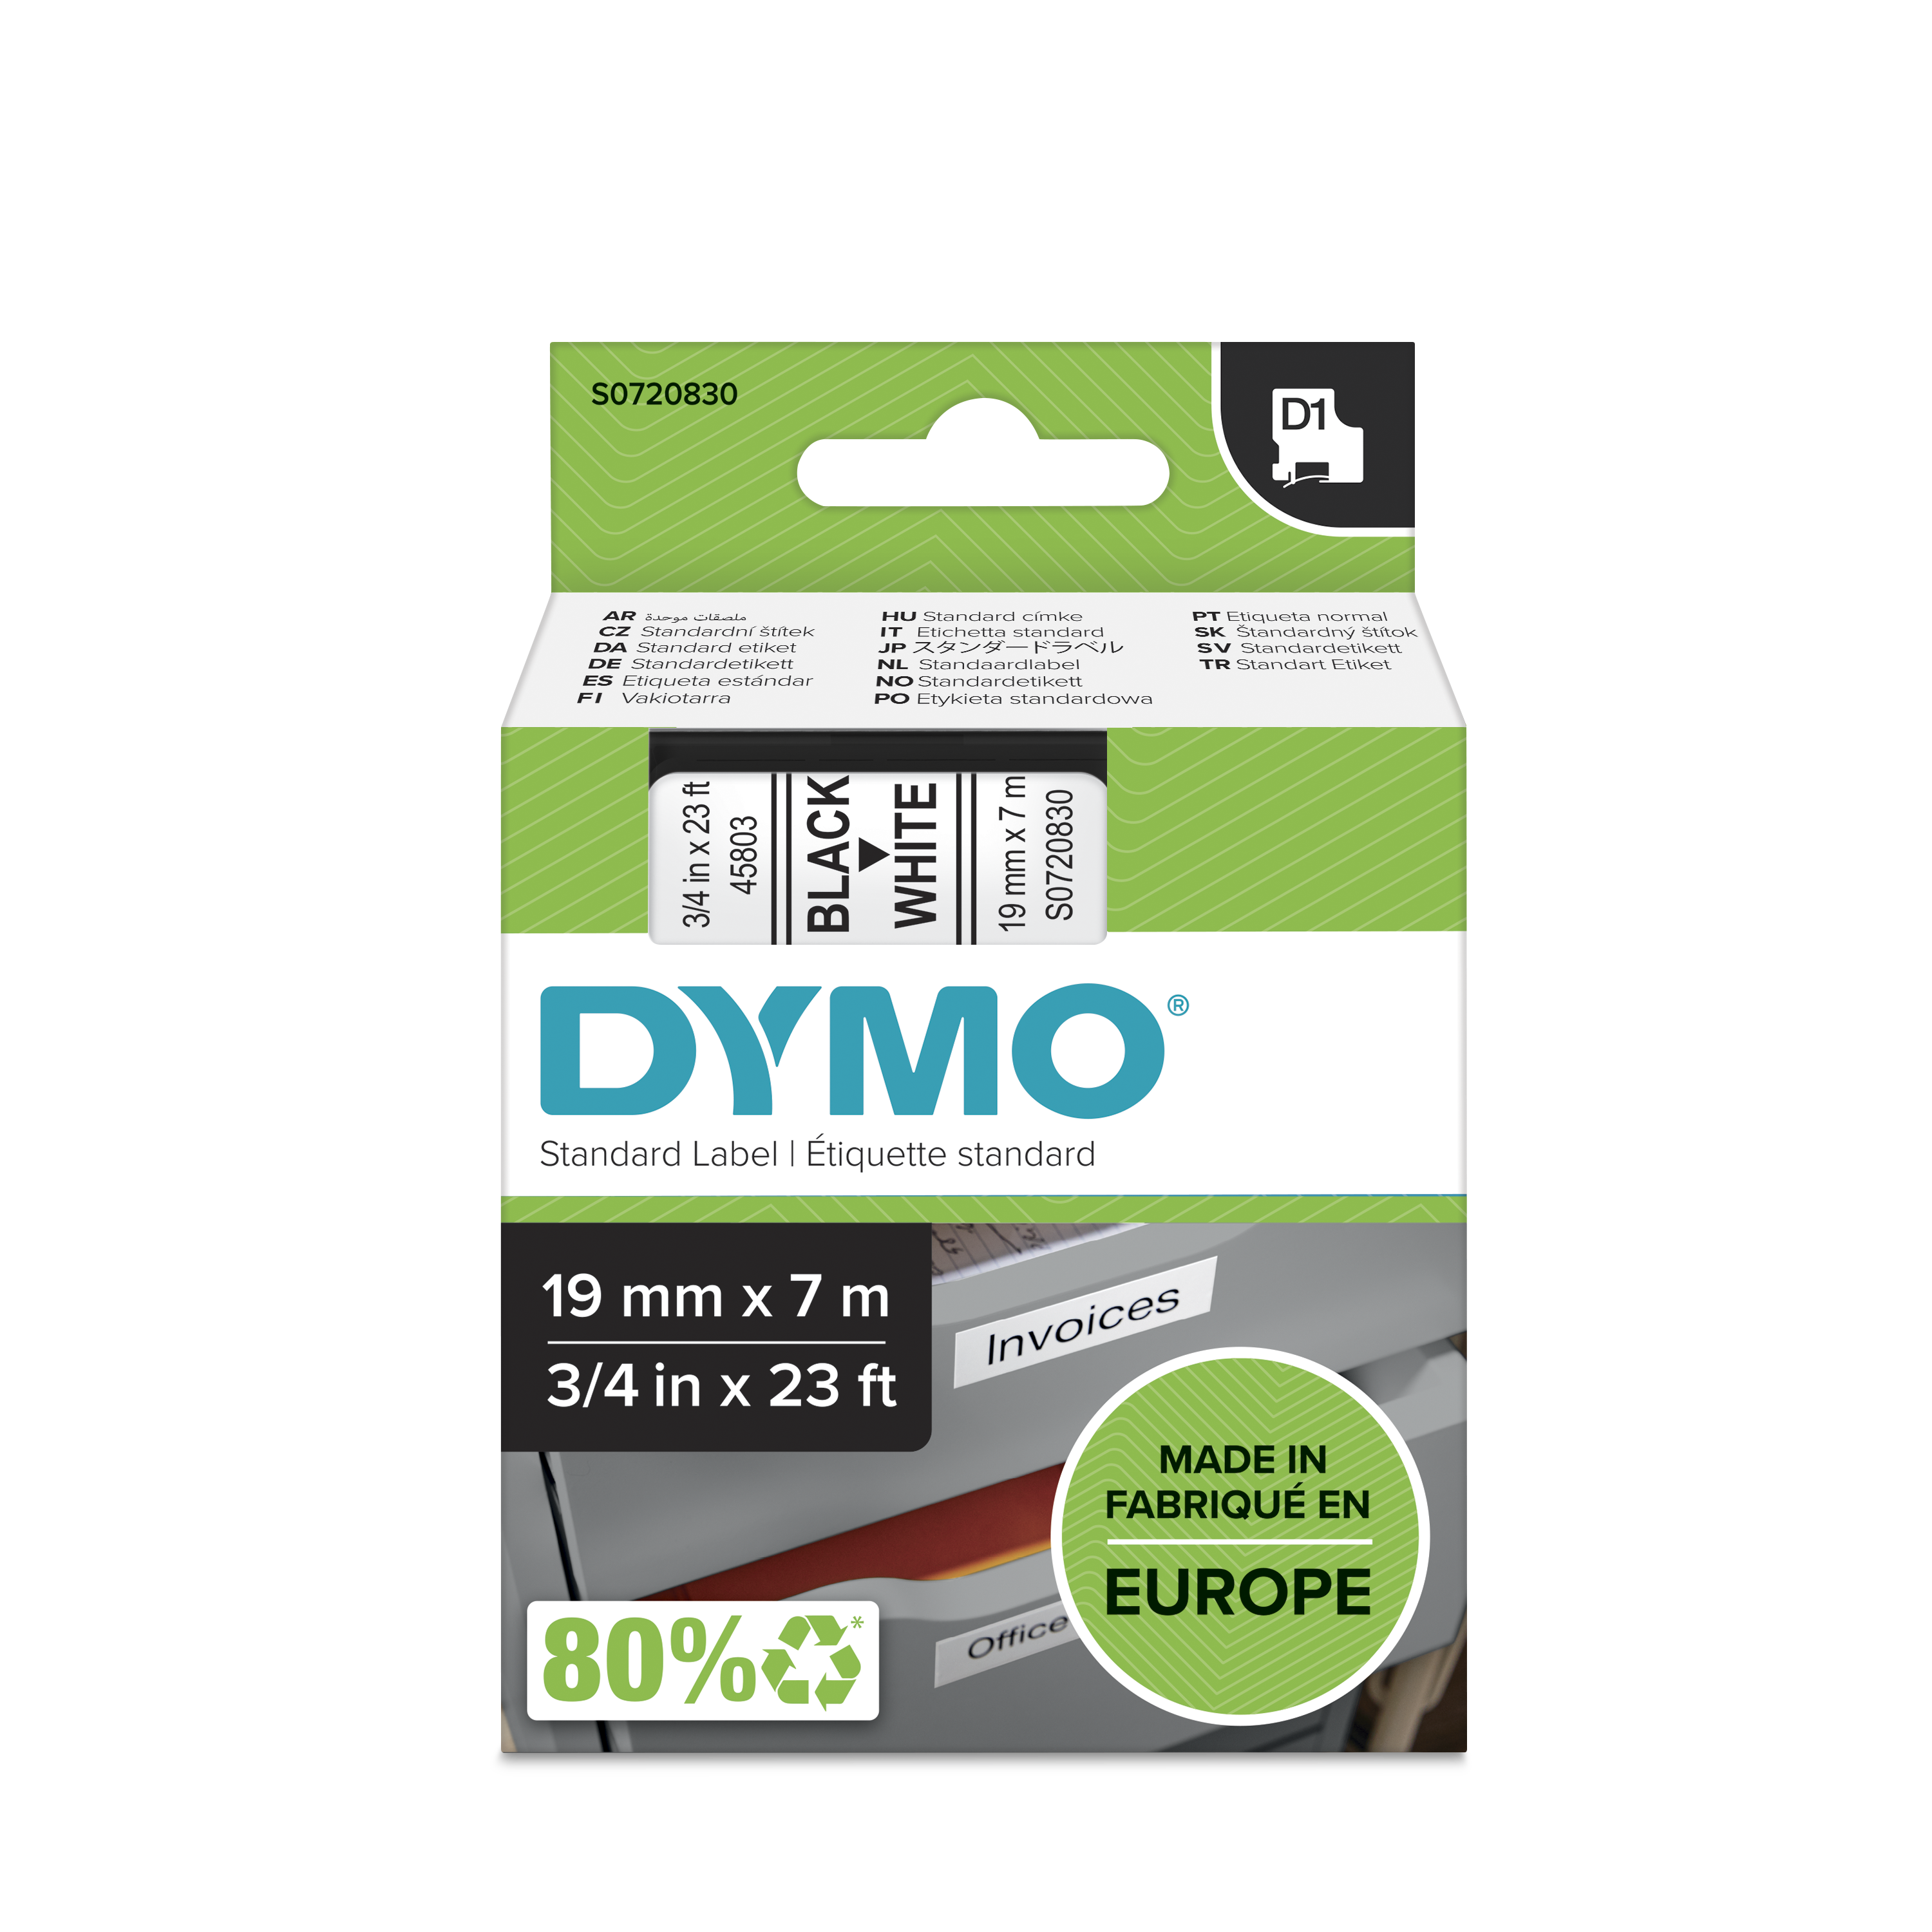 Dymo Black on White Label Printer Tape, 7 m Length, 19 mm Width